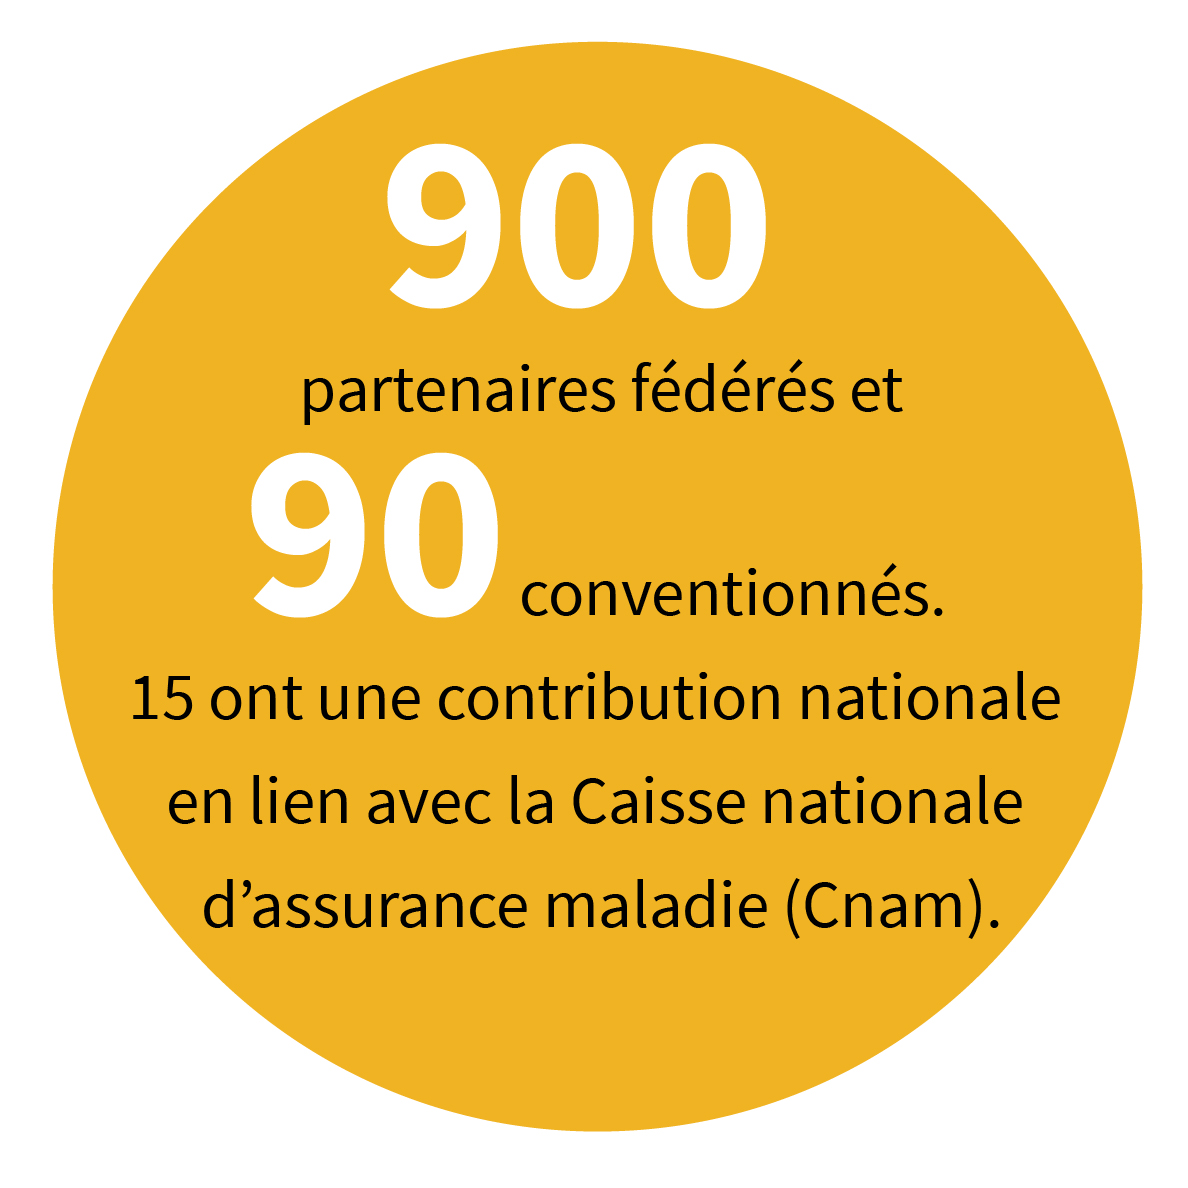 900 partenaires fédérés et 90 conventionnés, 15 ont une contribution nationale en lien avec la Caisse nationale d’assurance maladie (Cnam).